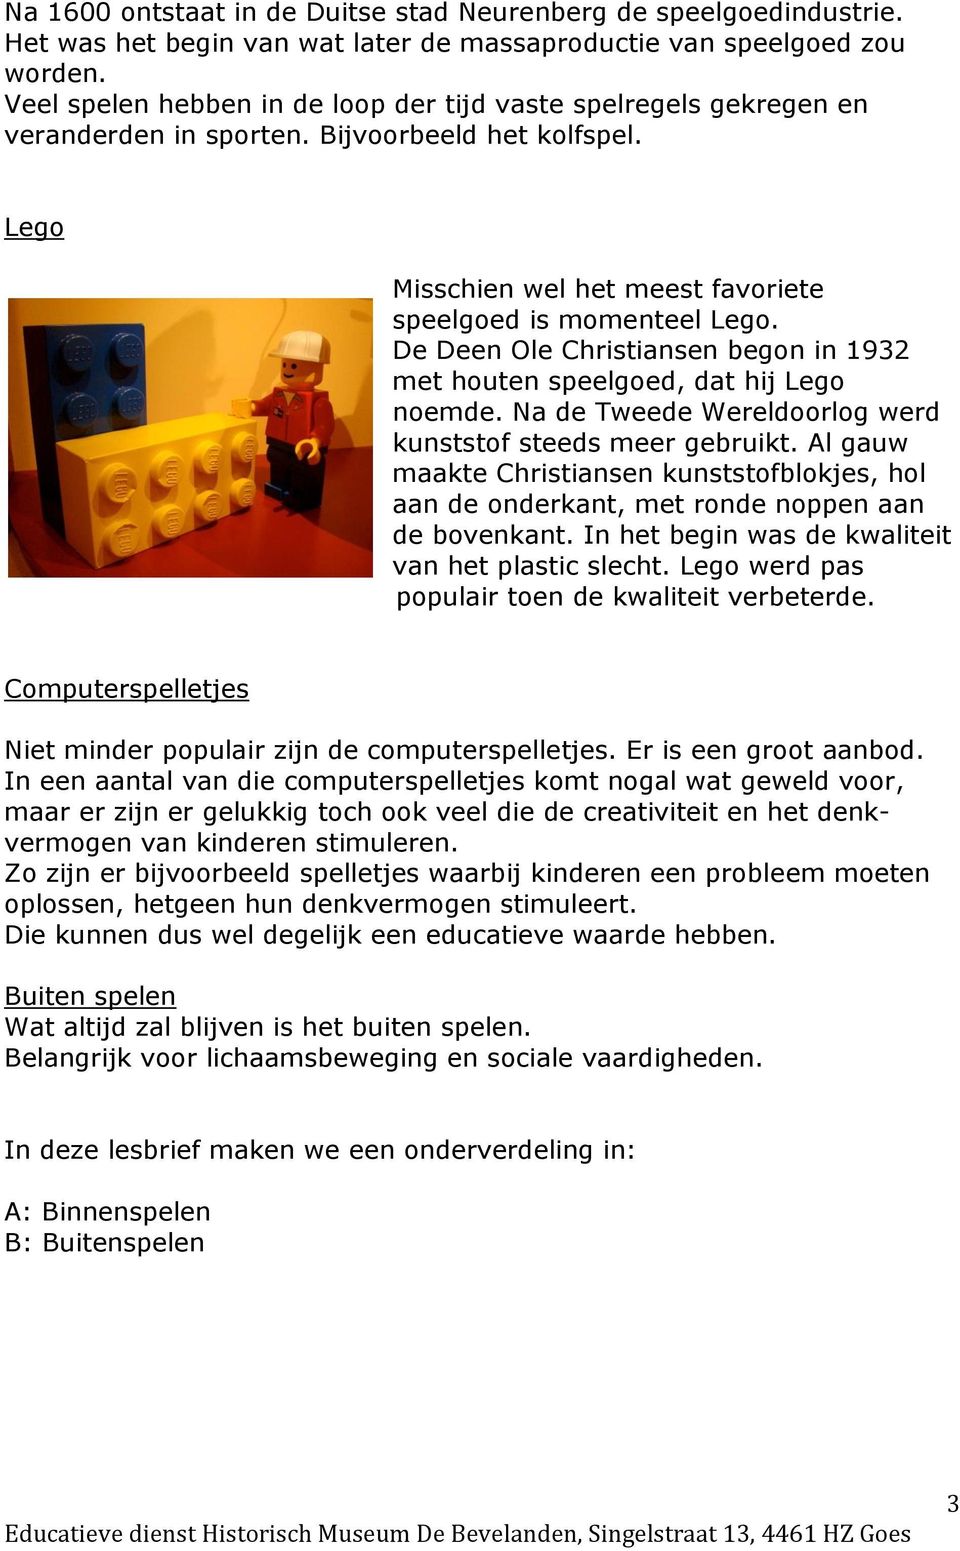 De Deen Ole Christiansen begon in 1932 met houten speelgoed, dat hij Lego noemde. Na de Tweede Wereldoorlog werd kunststof steeds meer gebruikt.